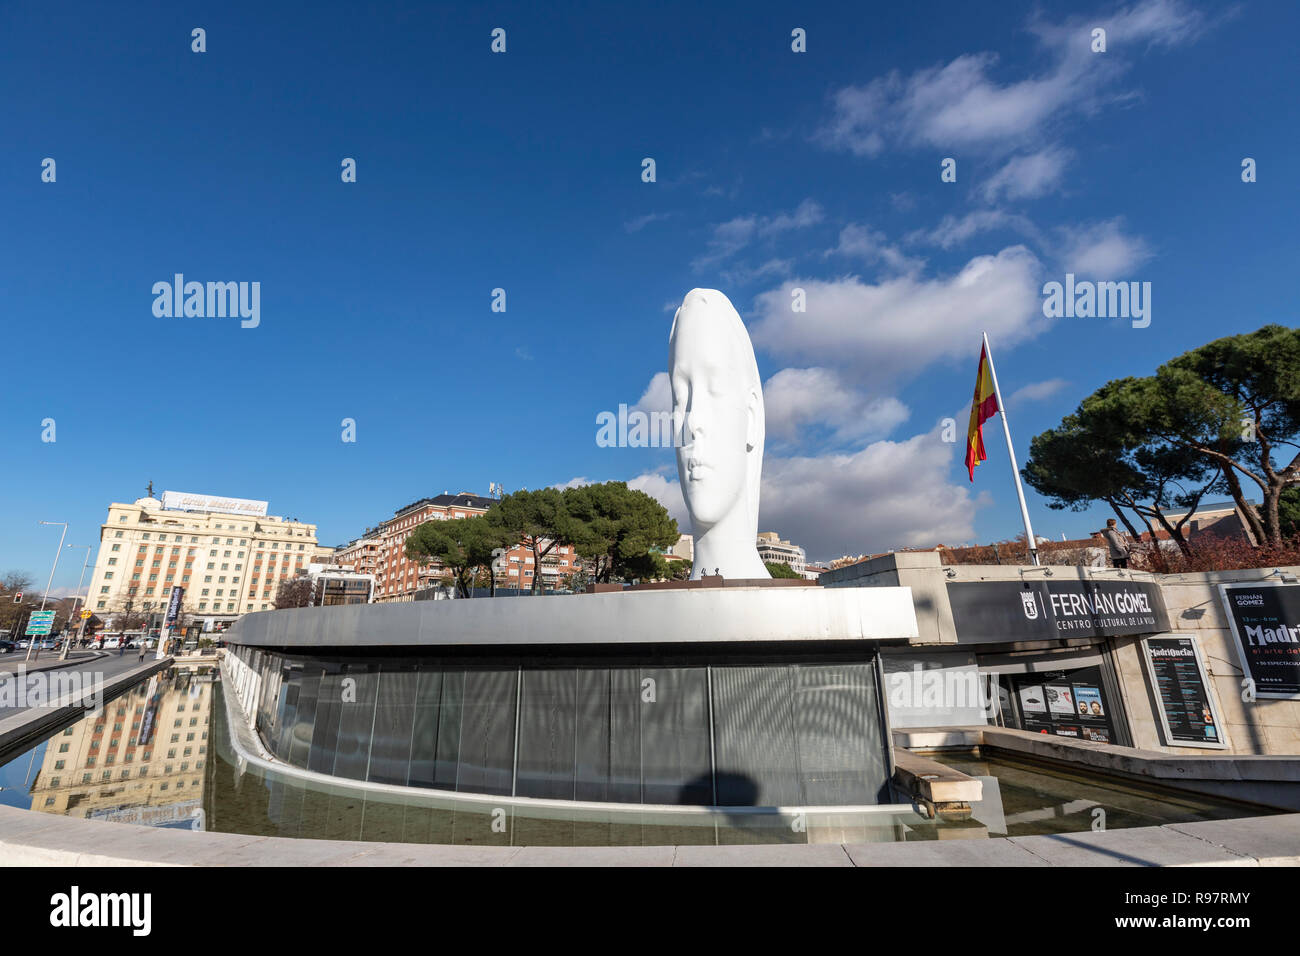 Julia, marmo bianco scultura di Jaume da Plensa a in Plaza Colon, Madrid, Spagna Foto Stock